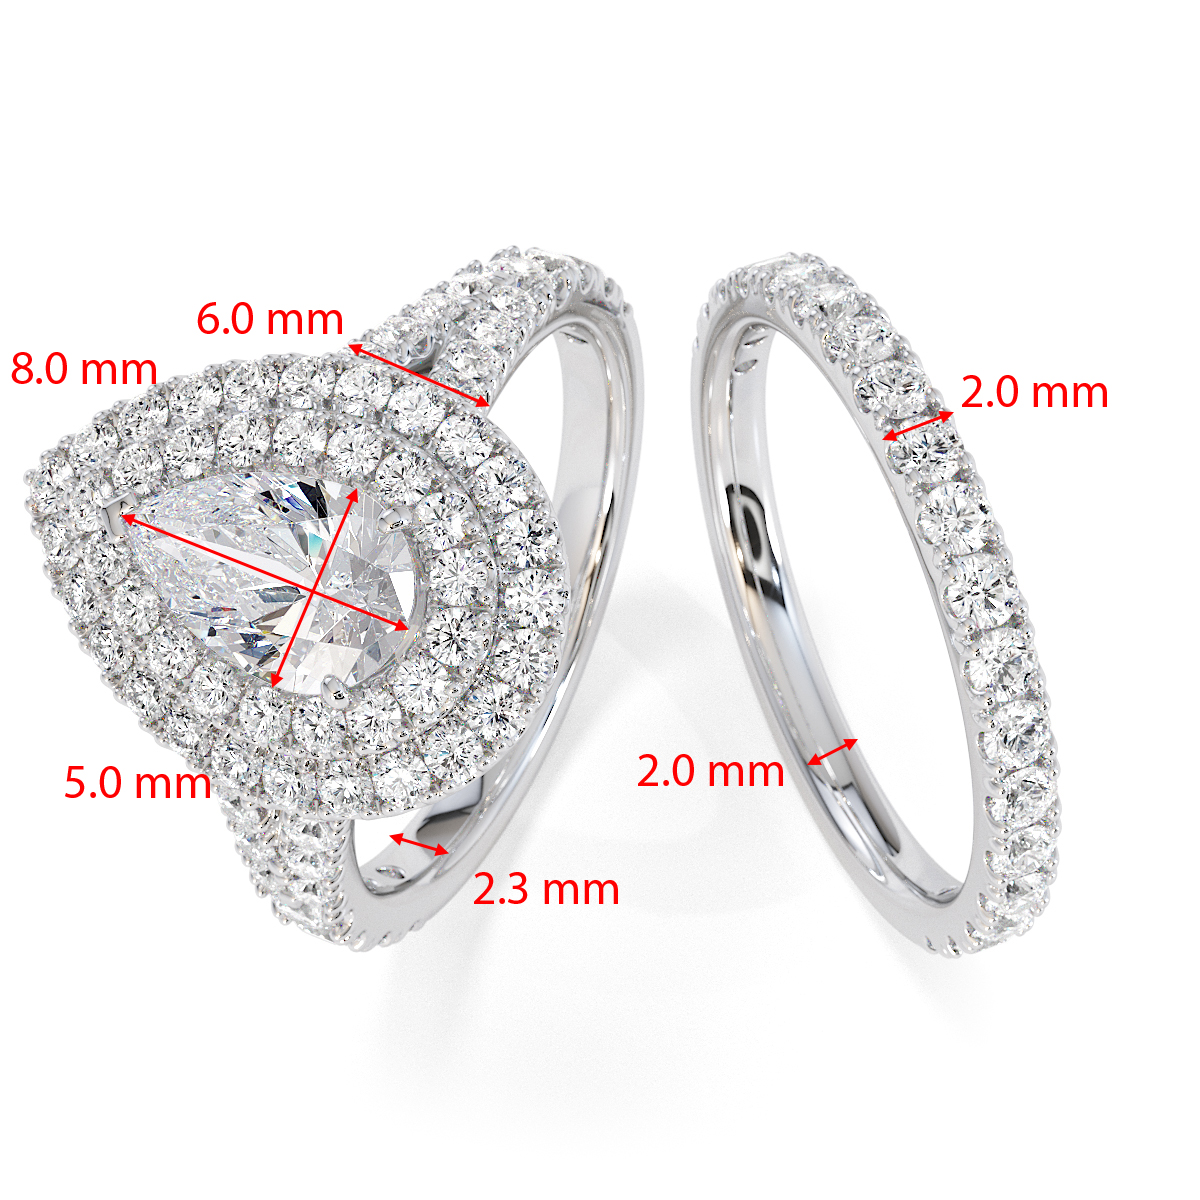 Gold / Platinum Tanzanite and Diamond Engagement Ring RZ3473